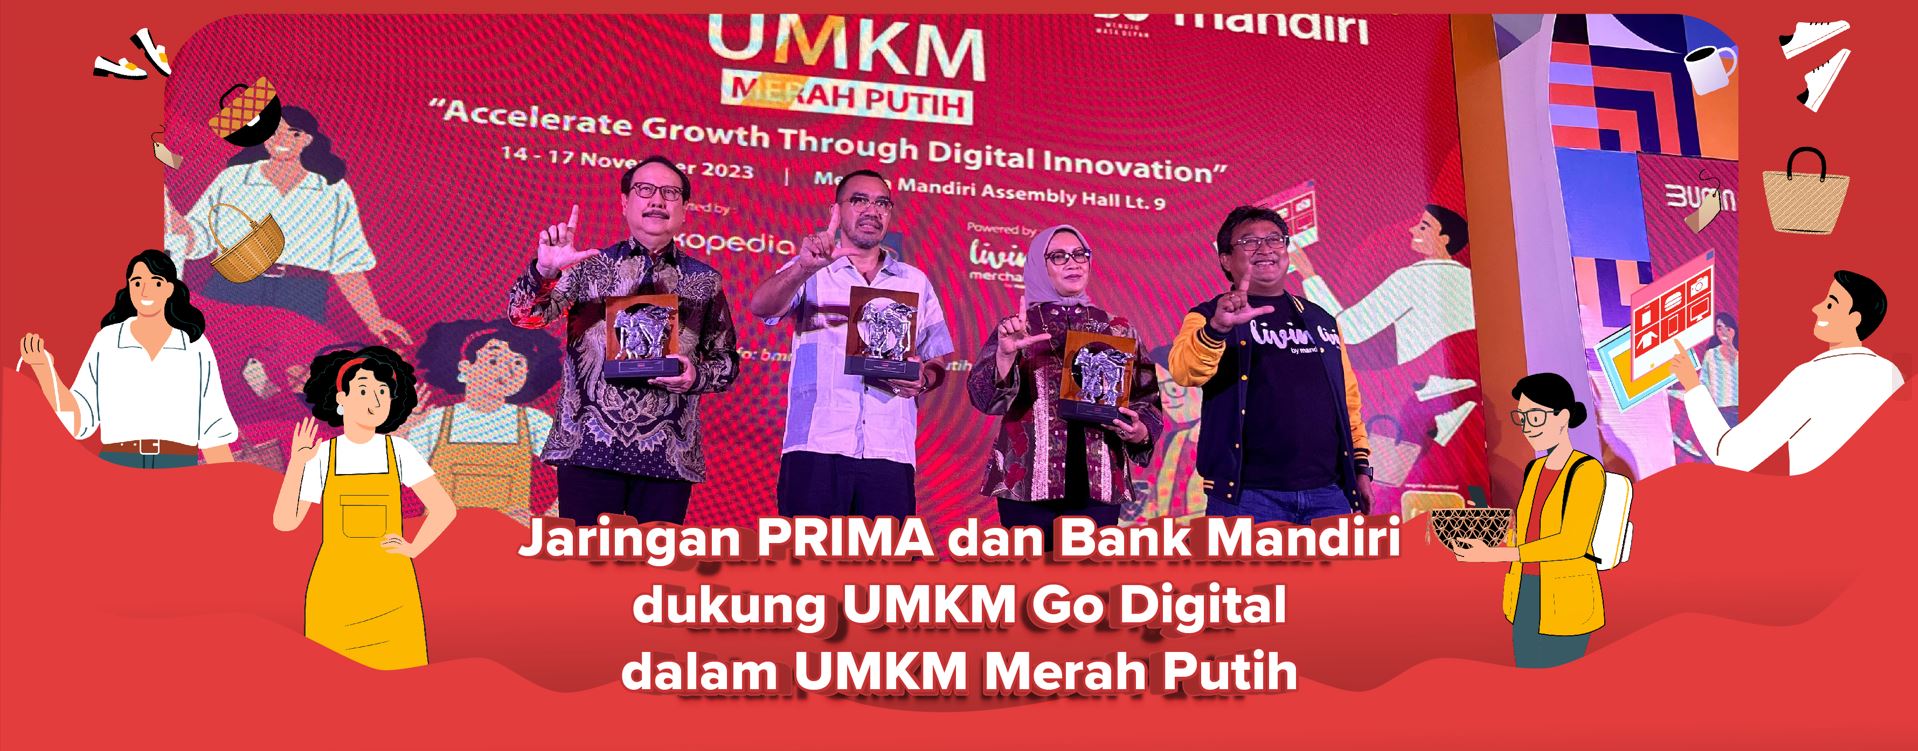 Jaringan PRIMA dan Bank Mandiri dukung UMKM Go Digital dalam UMKM Merah Putih